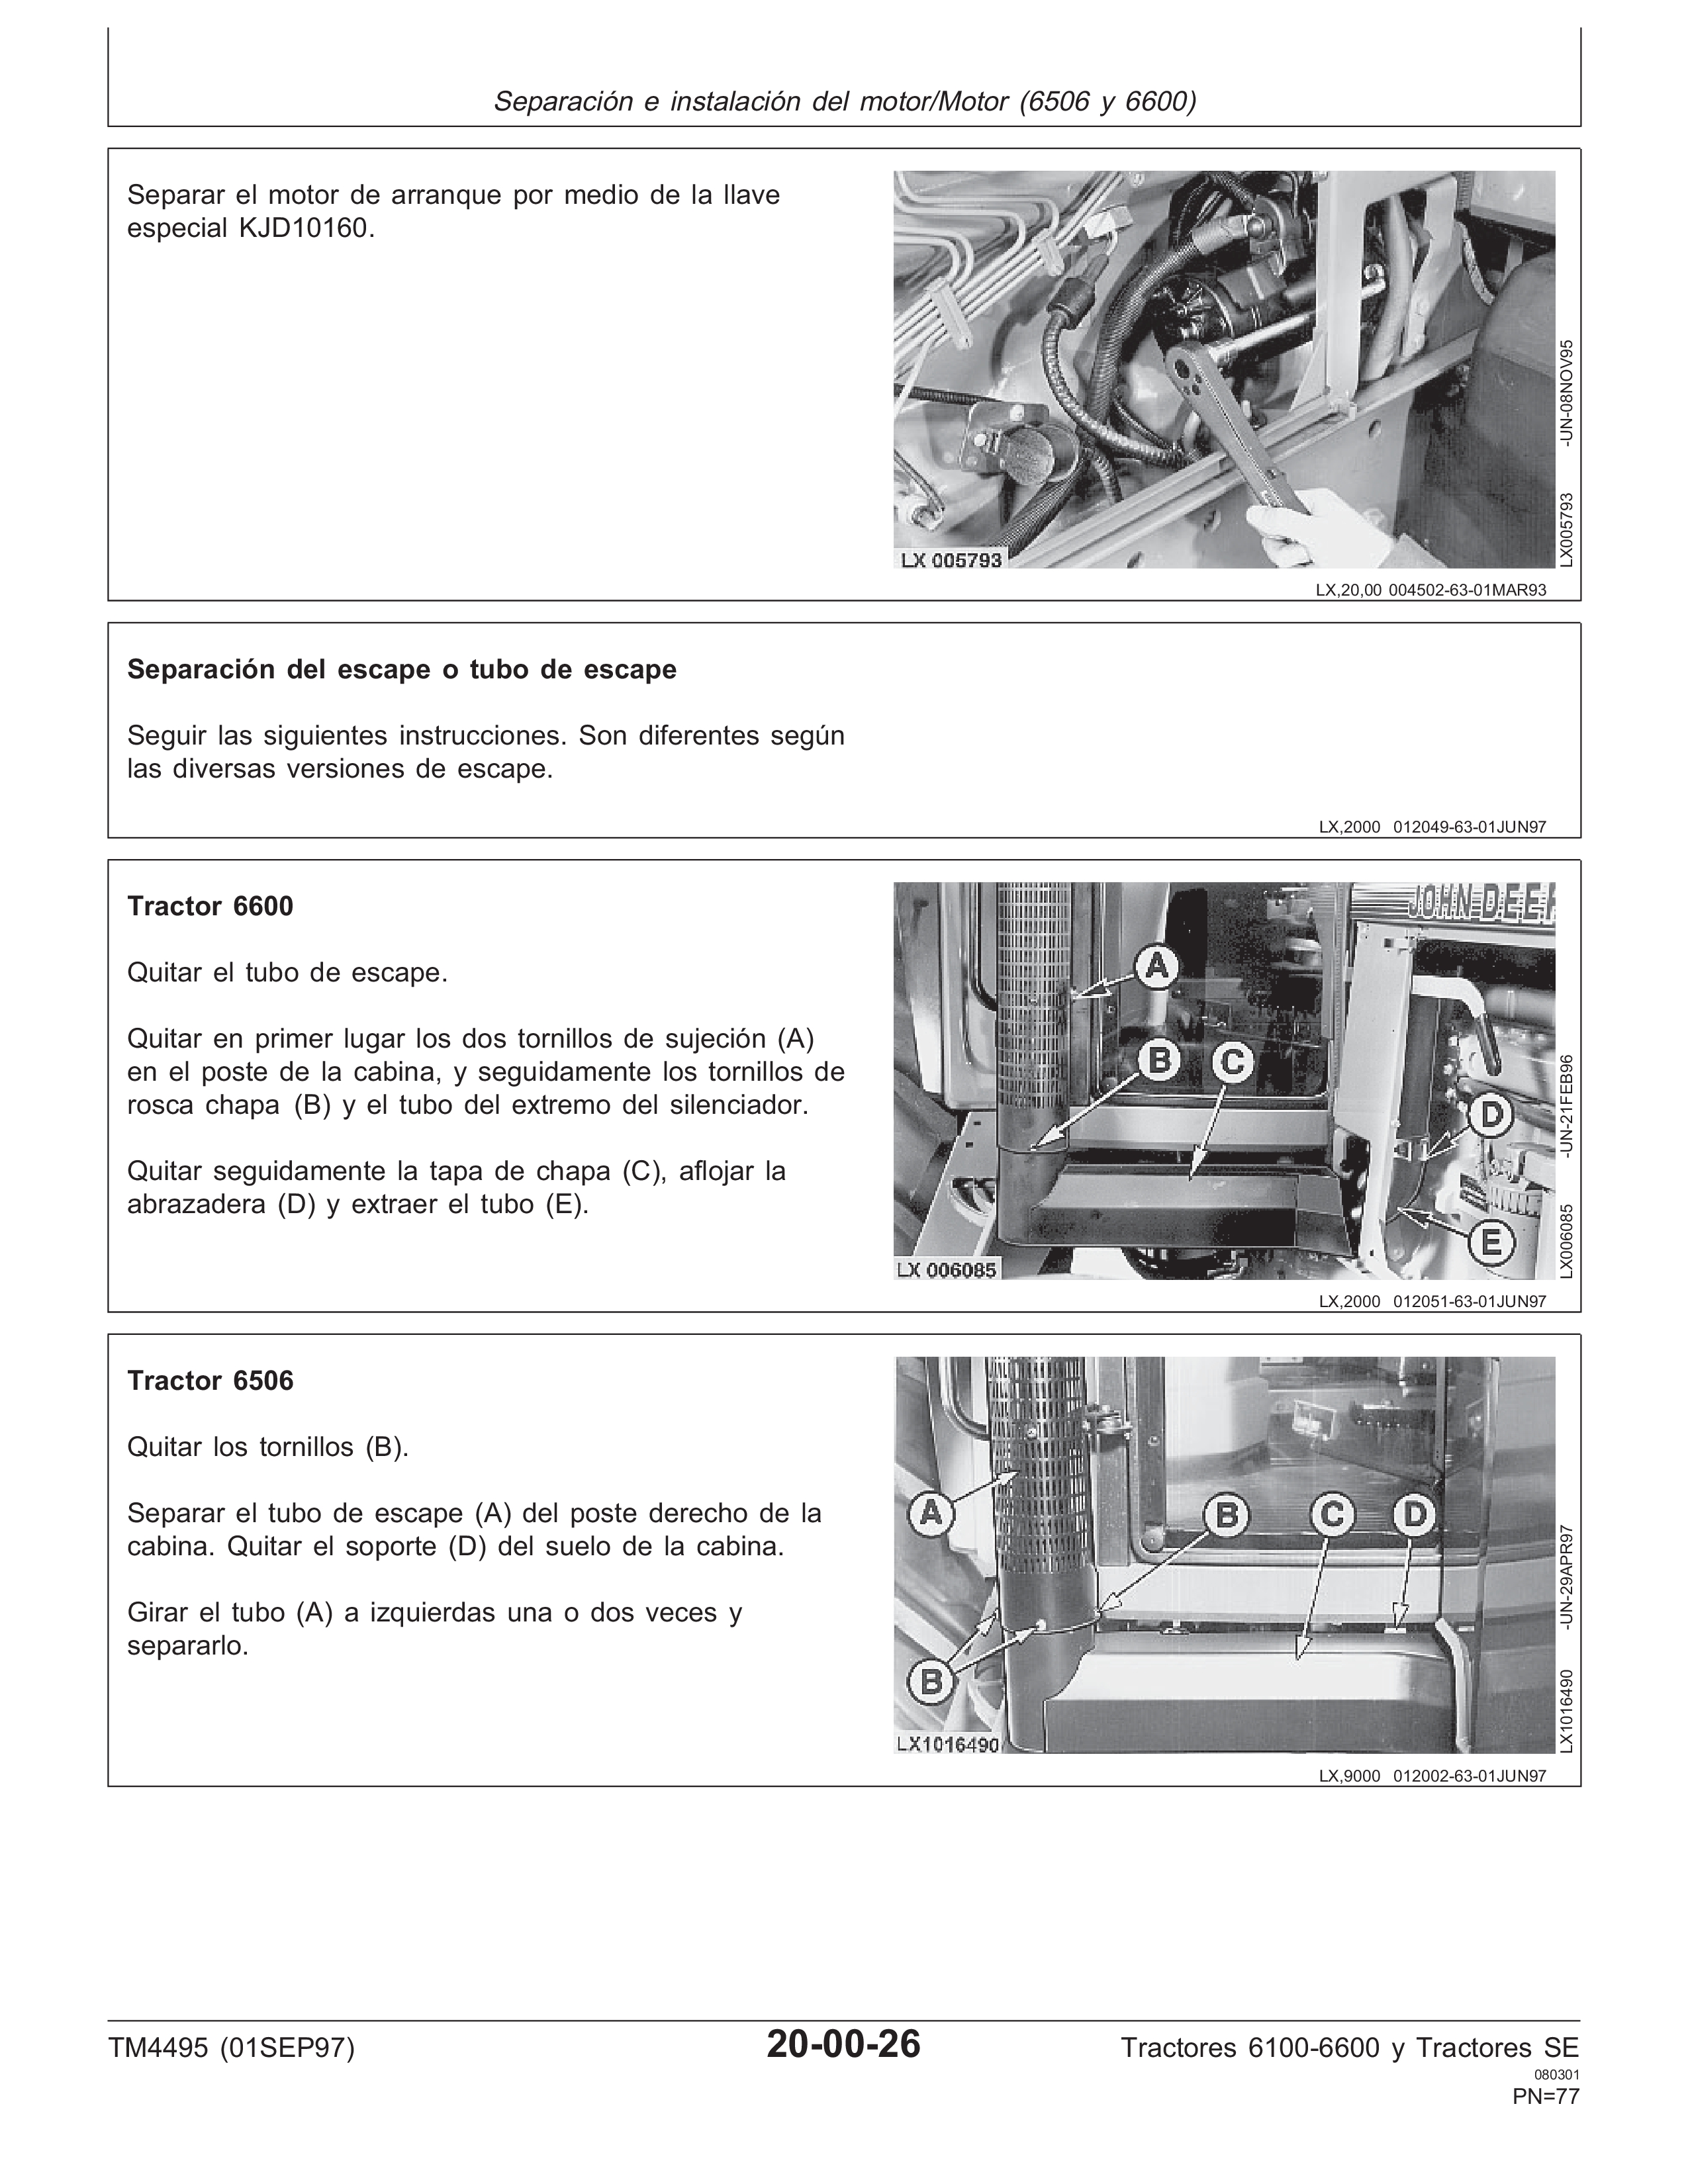 John Deere Parts Manual Download